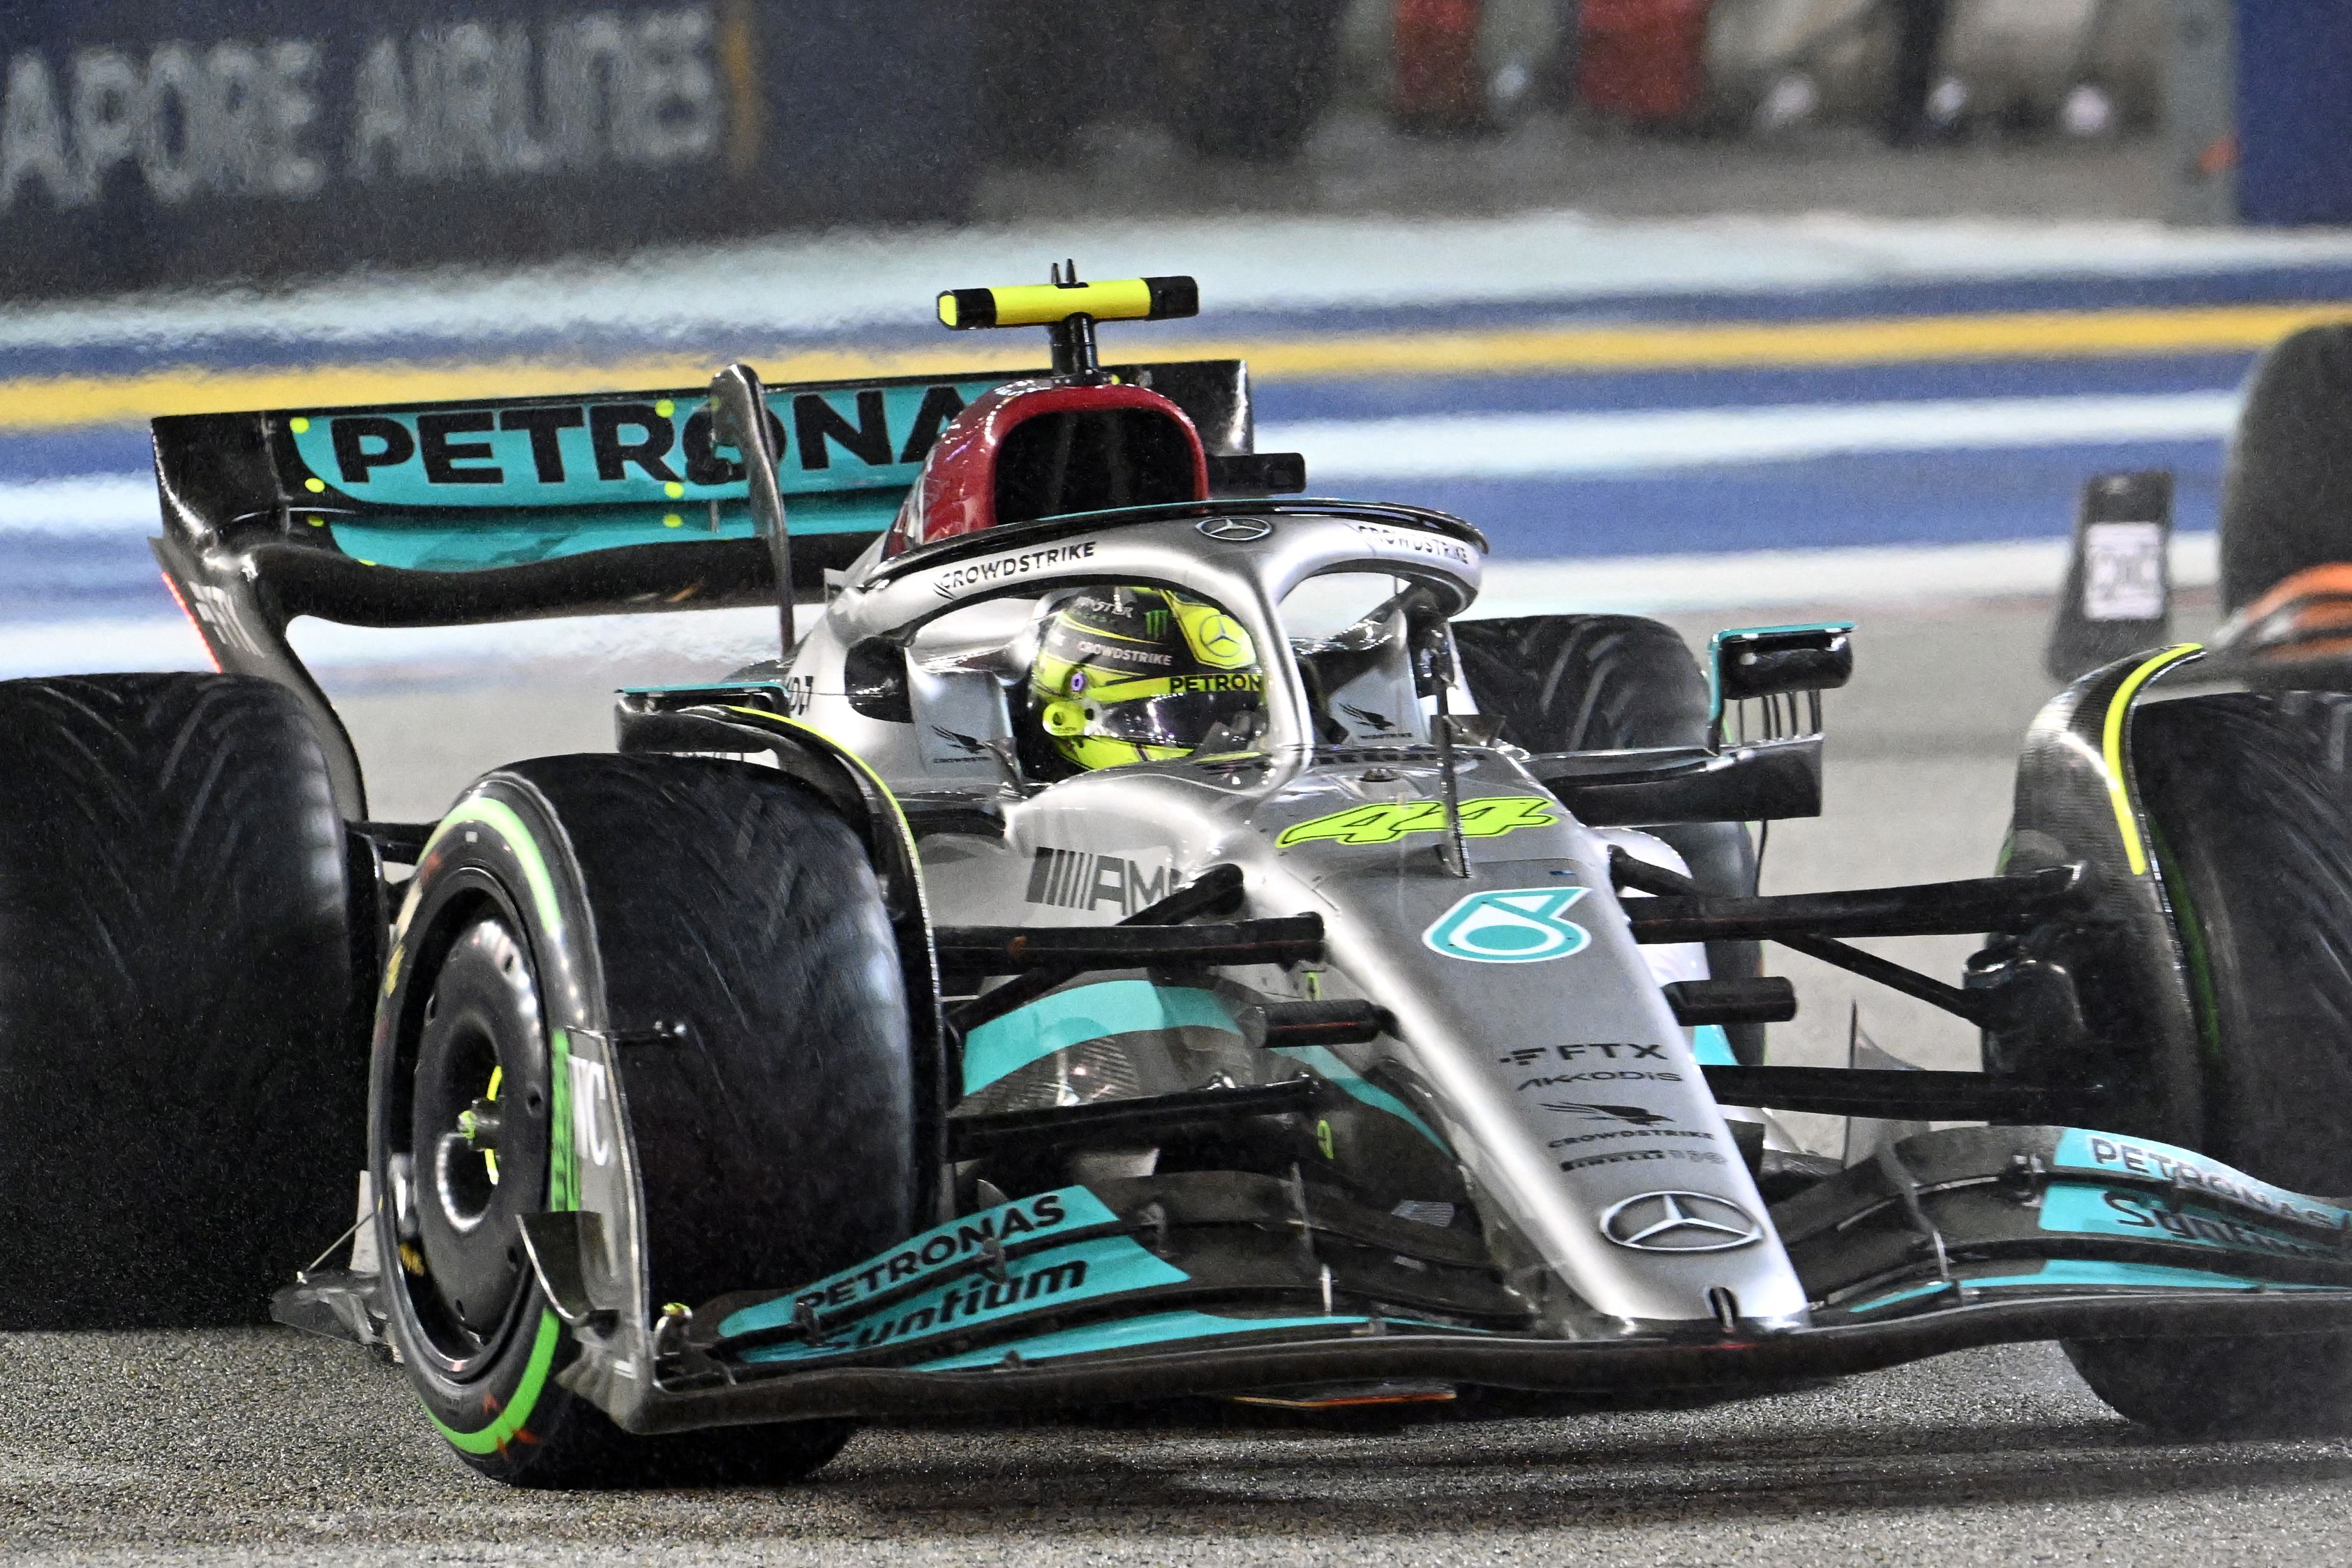 Lewis Hamilton finished ninth in Singapore